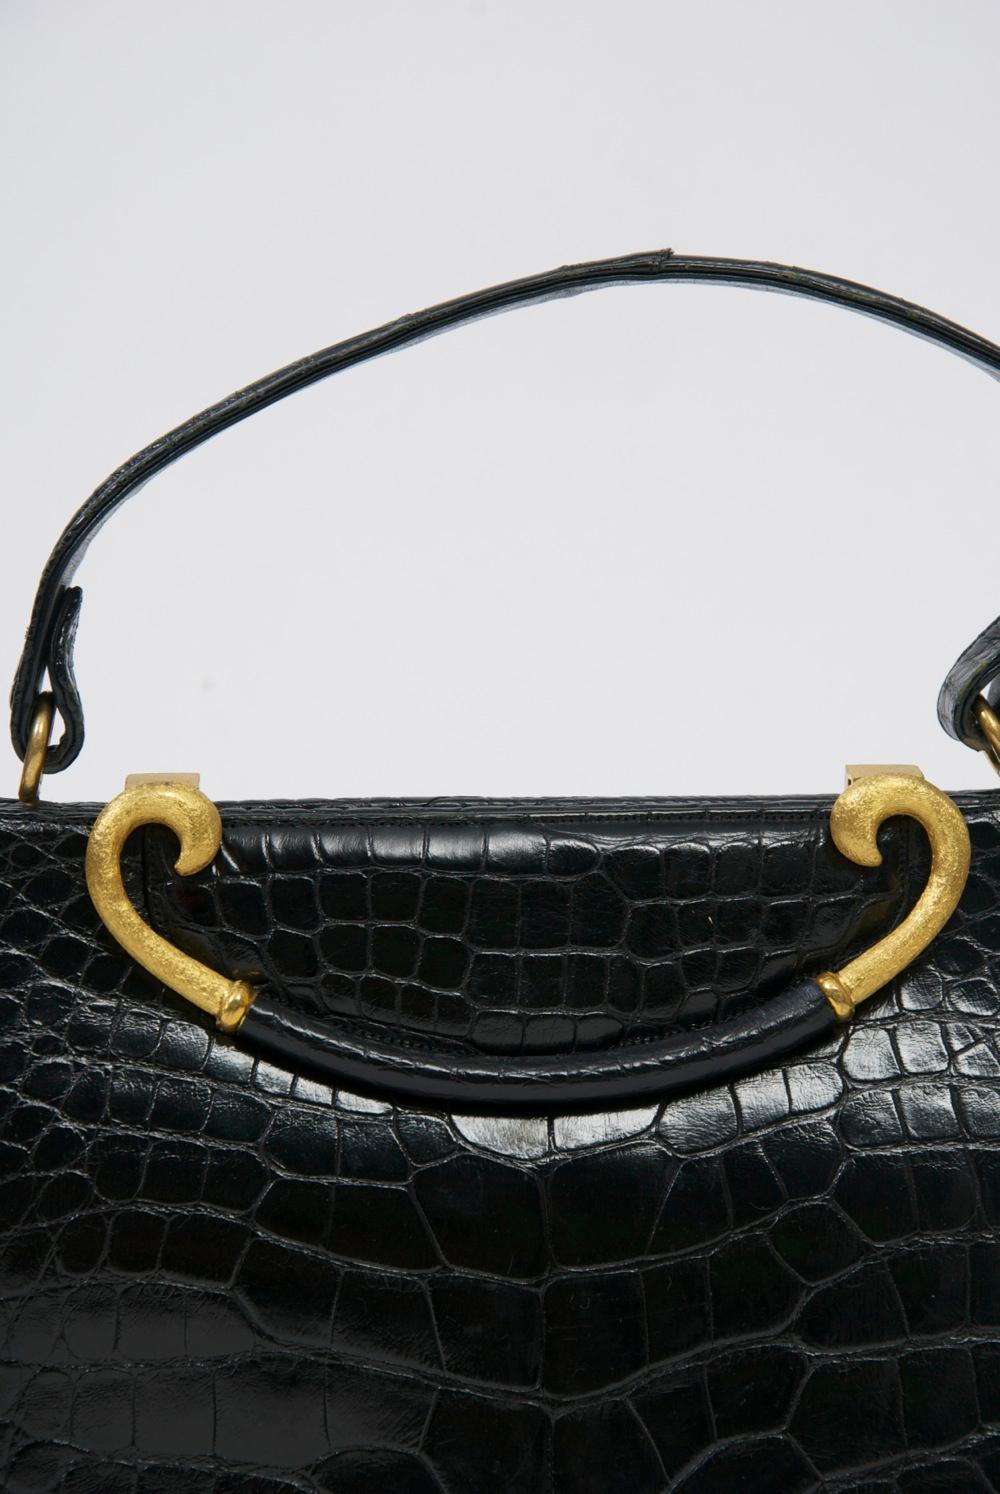 Sac à main classique des années 1960 de Rosenfeld en cuir noir estampé pour ressembler à de l'alligator. Sa caractéristique principale est le fermoir incurvé en métal doré brossé avec un centre en cuir qui se soulève pour ouvrir le sac. Le riche